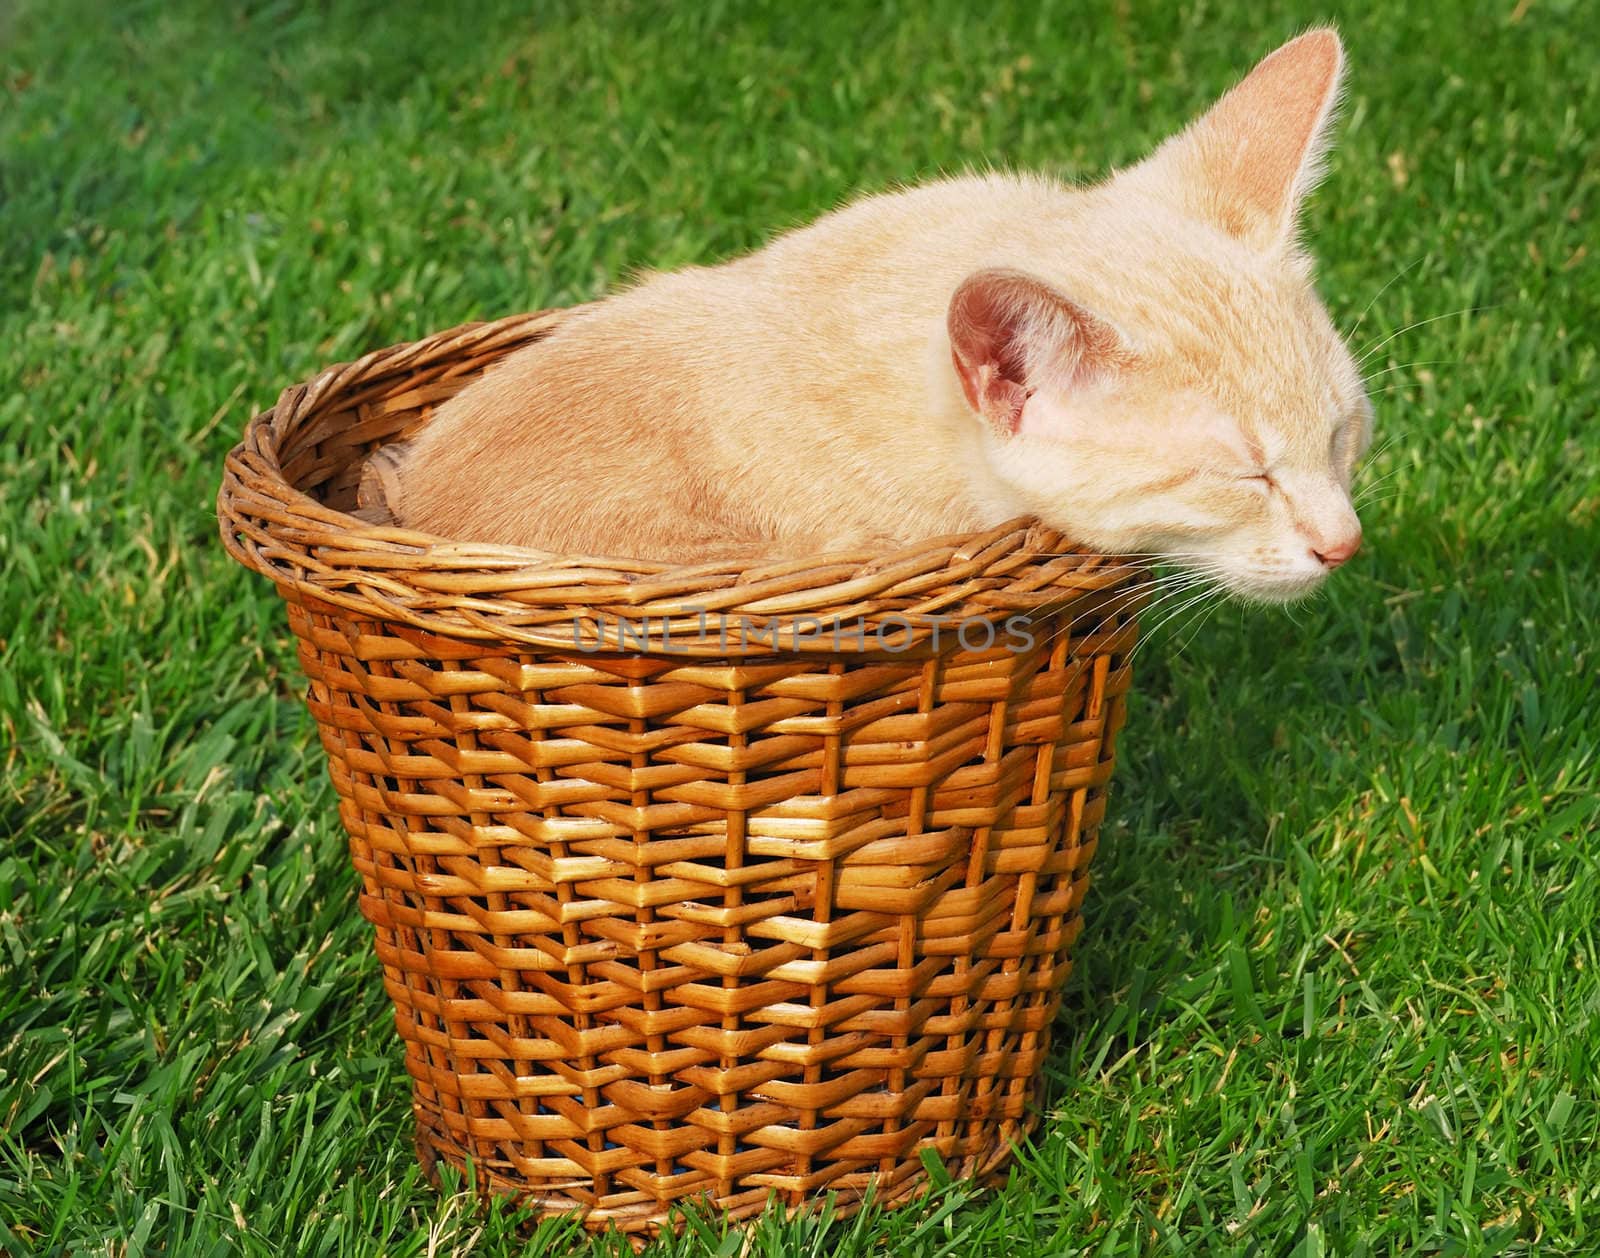 Cute yellow kitten sleeps in a basket.